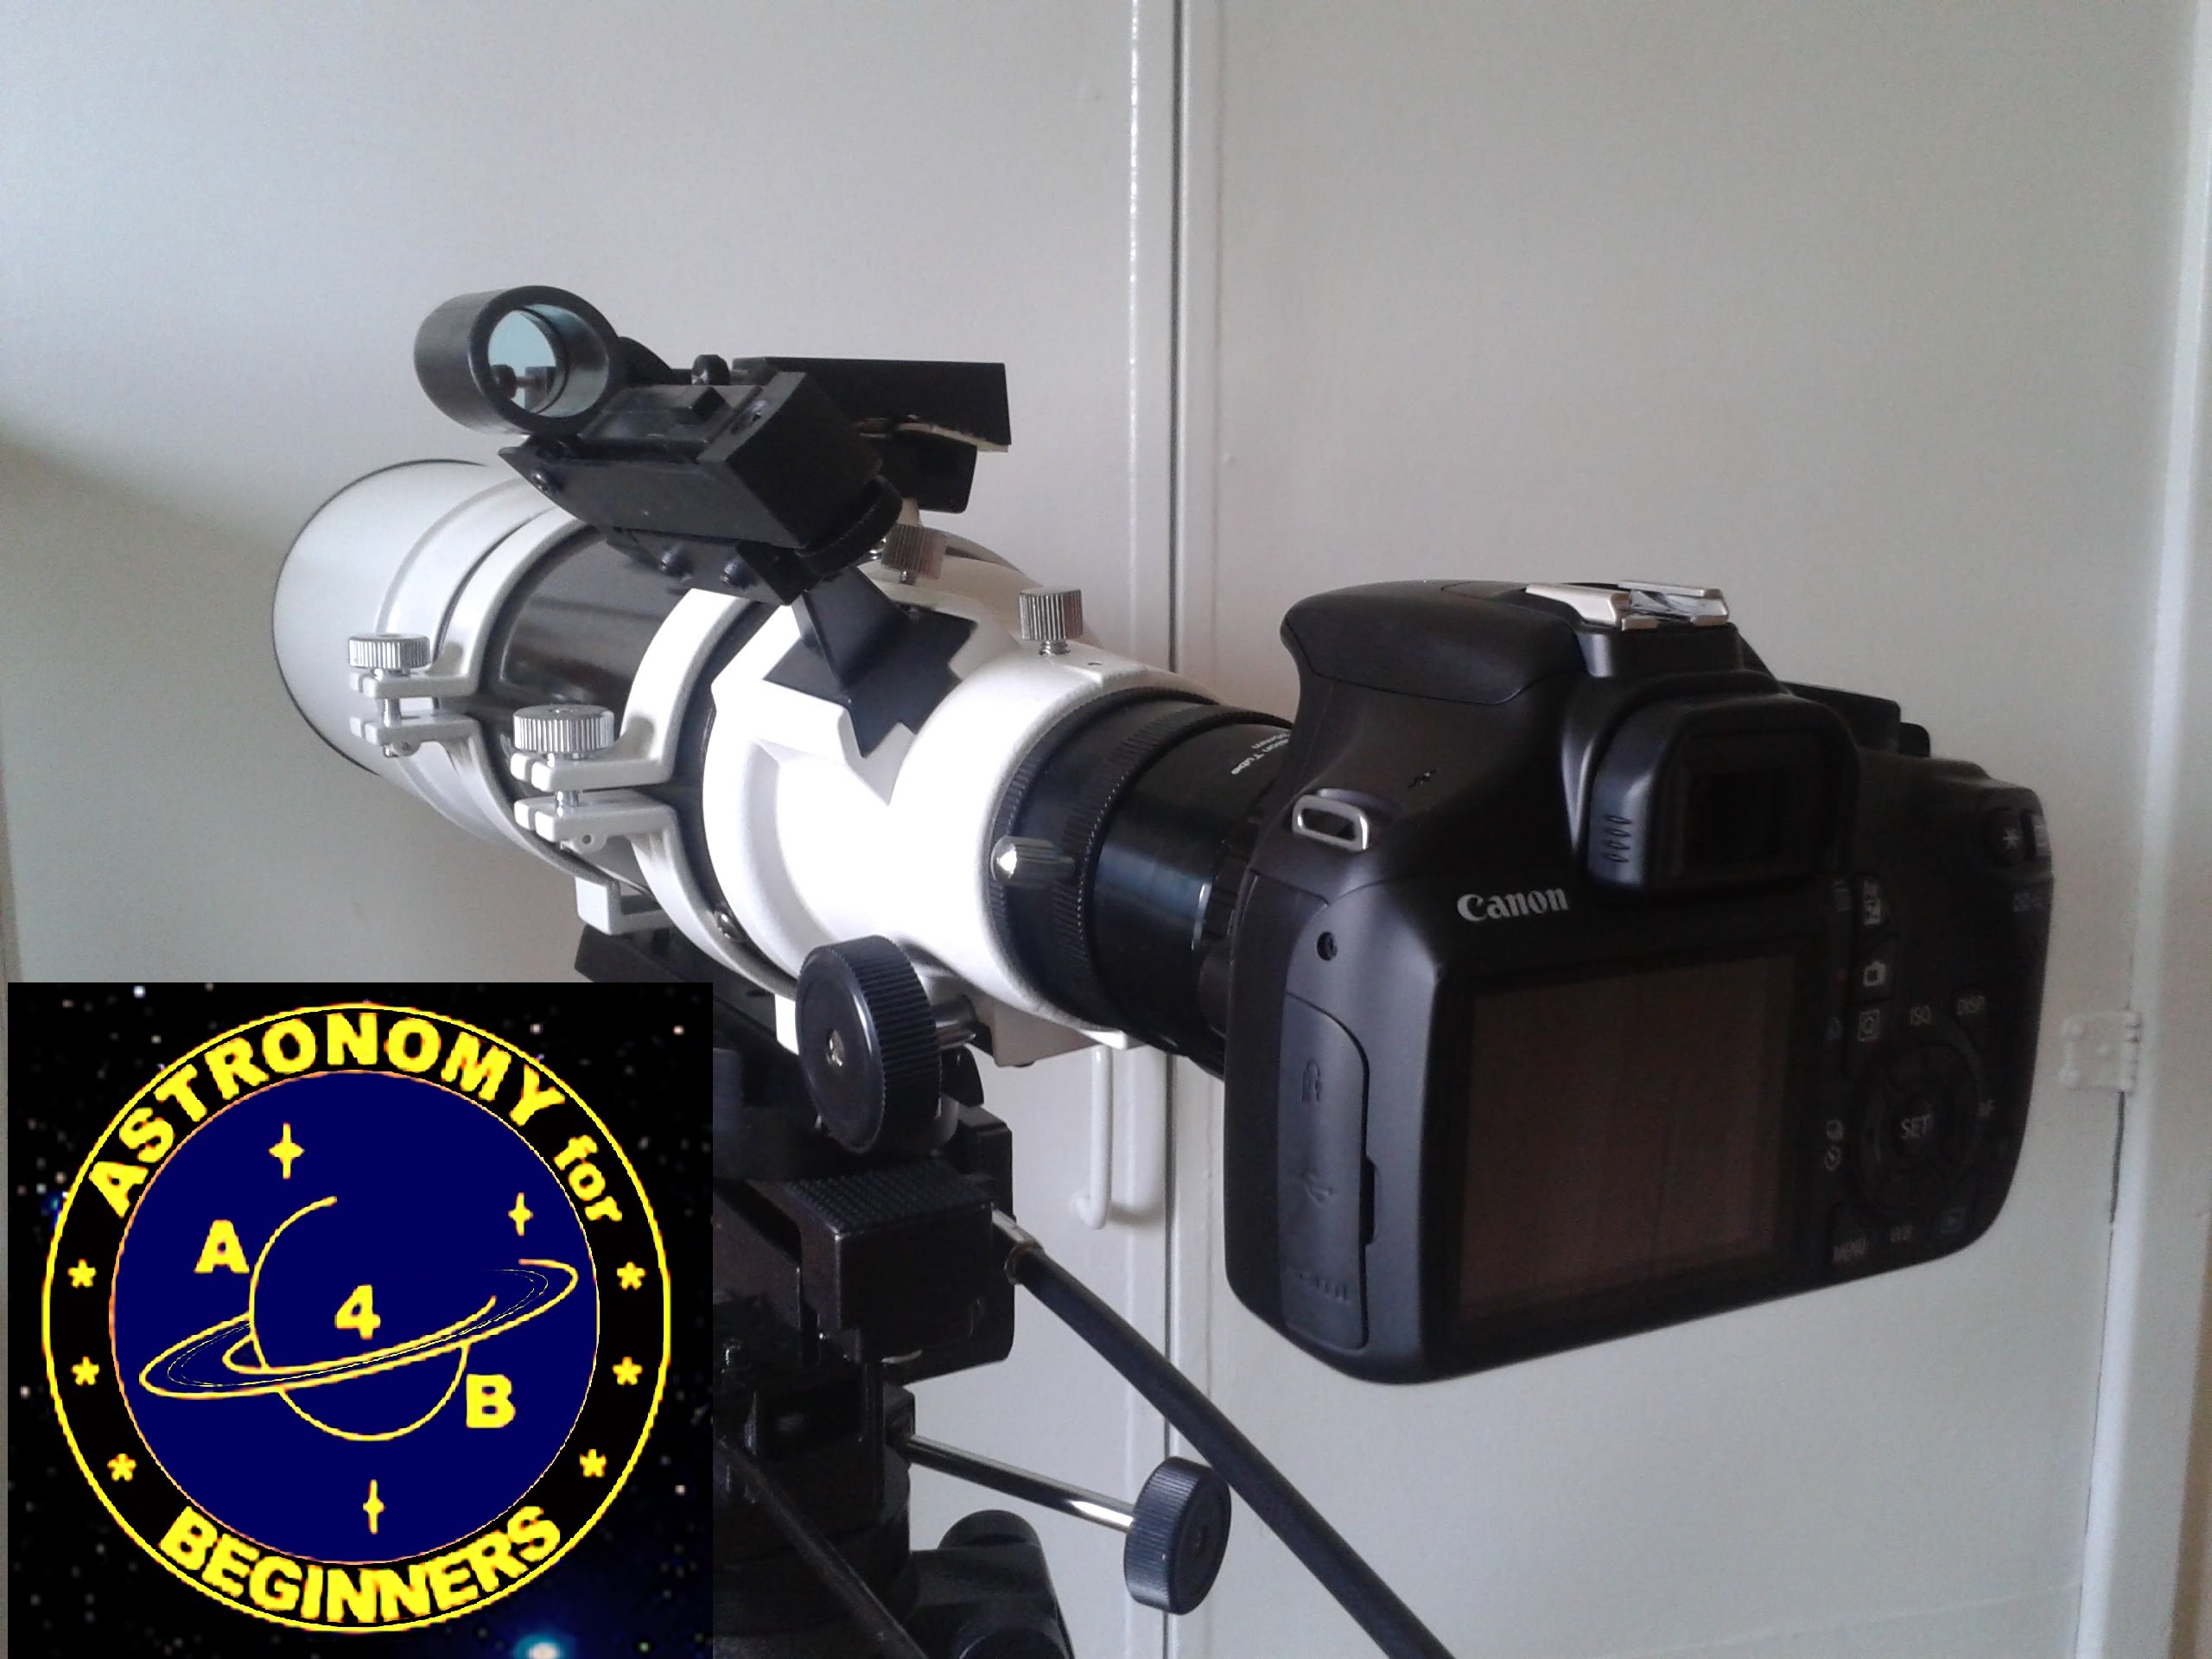 How to attach a DSLR camera onto your telescope